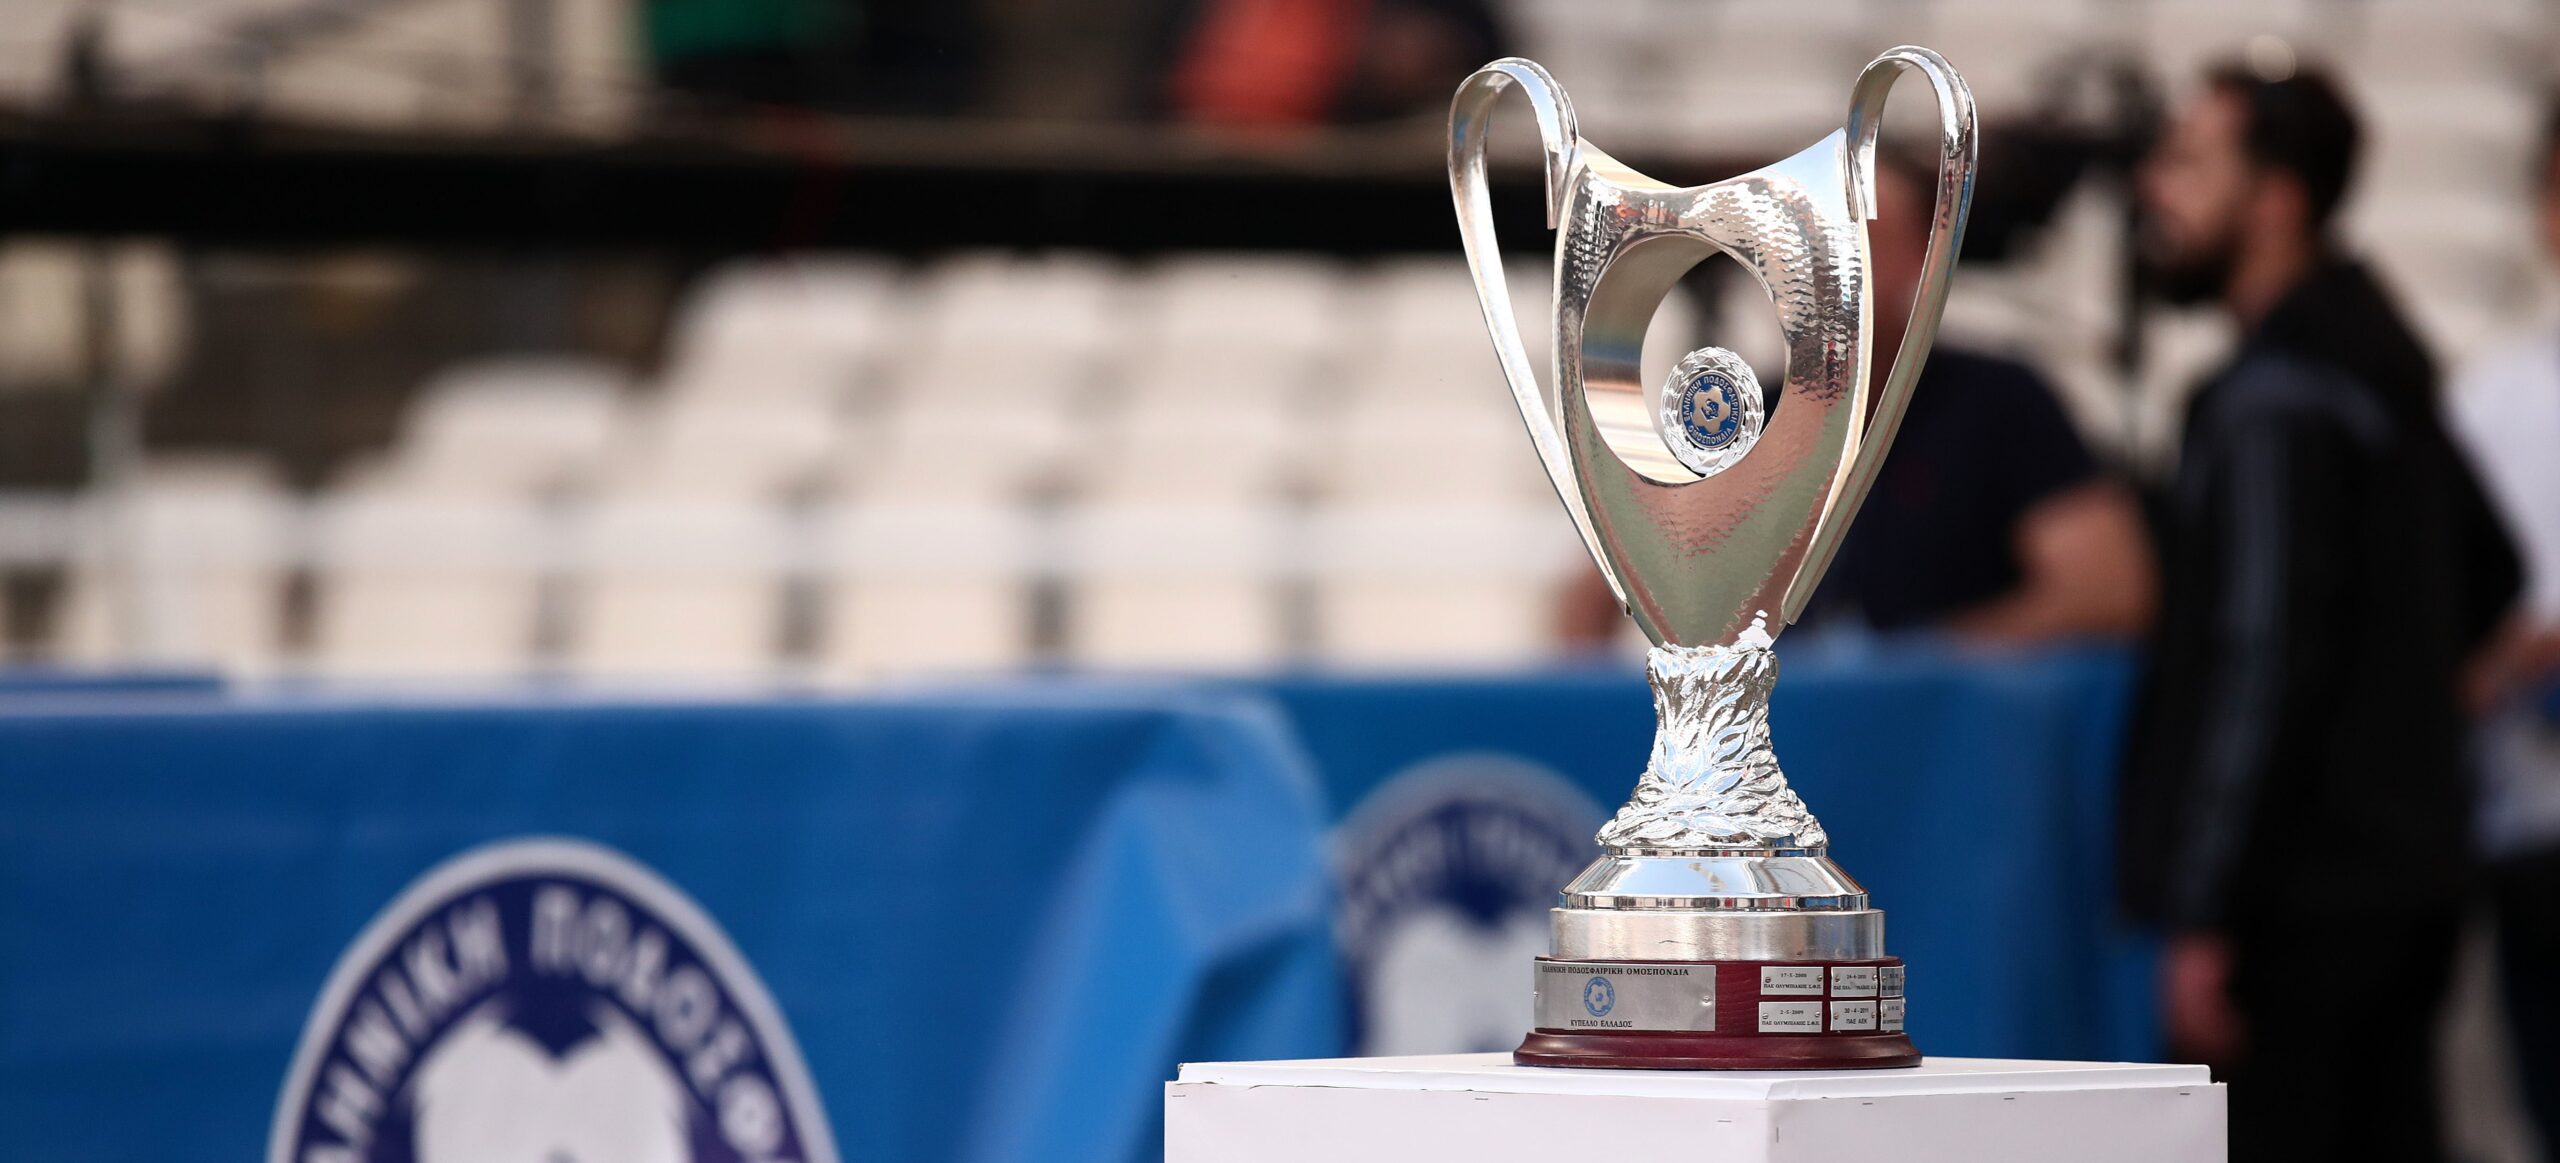 Κύπελλο Ελλάδας: Οι 16 ομάδες που προκρίθηκαν